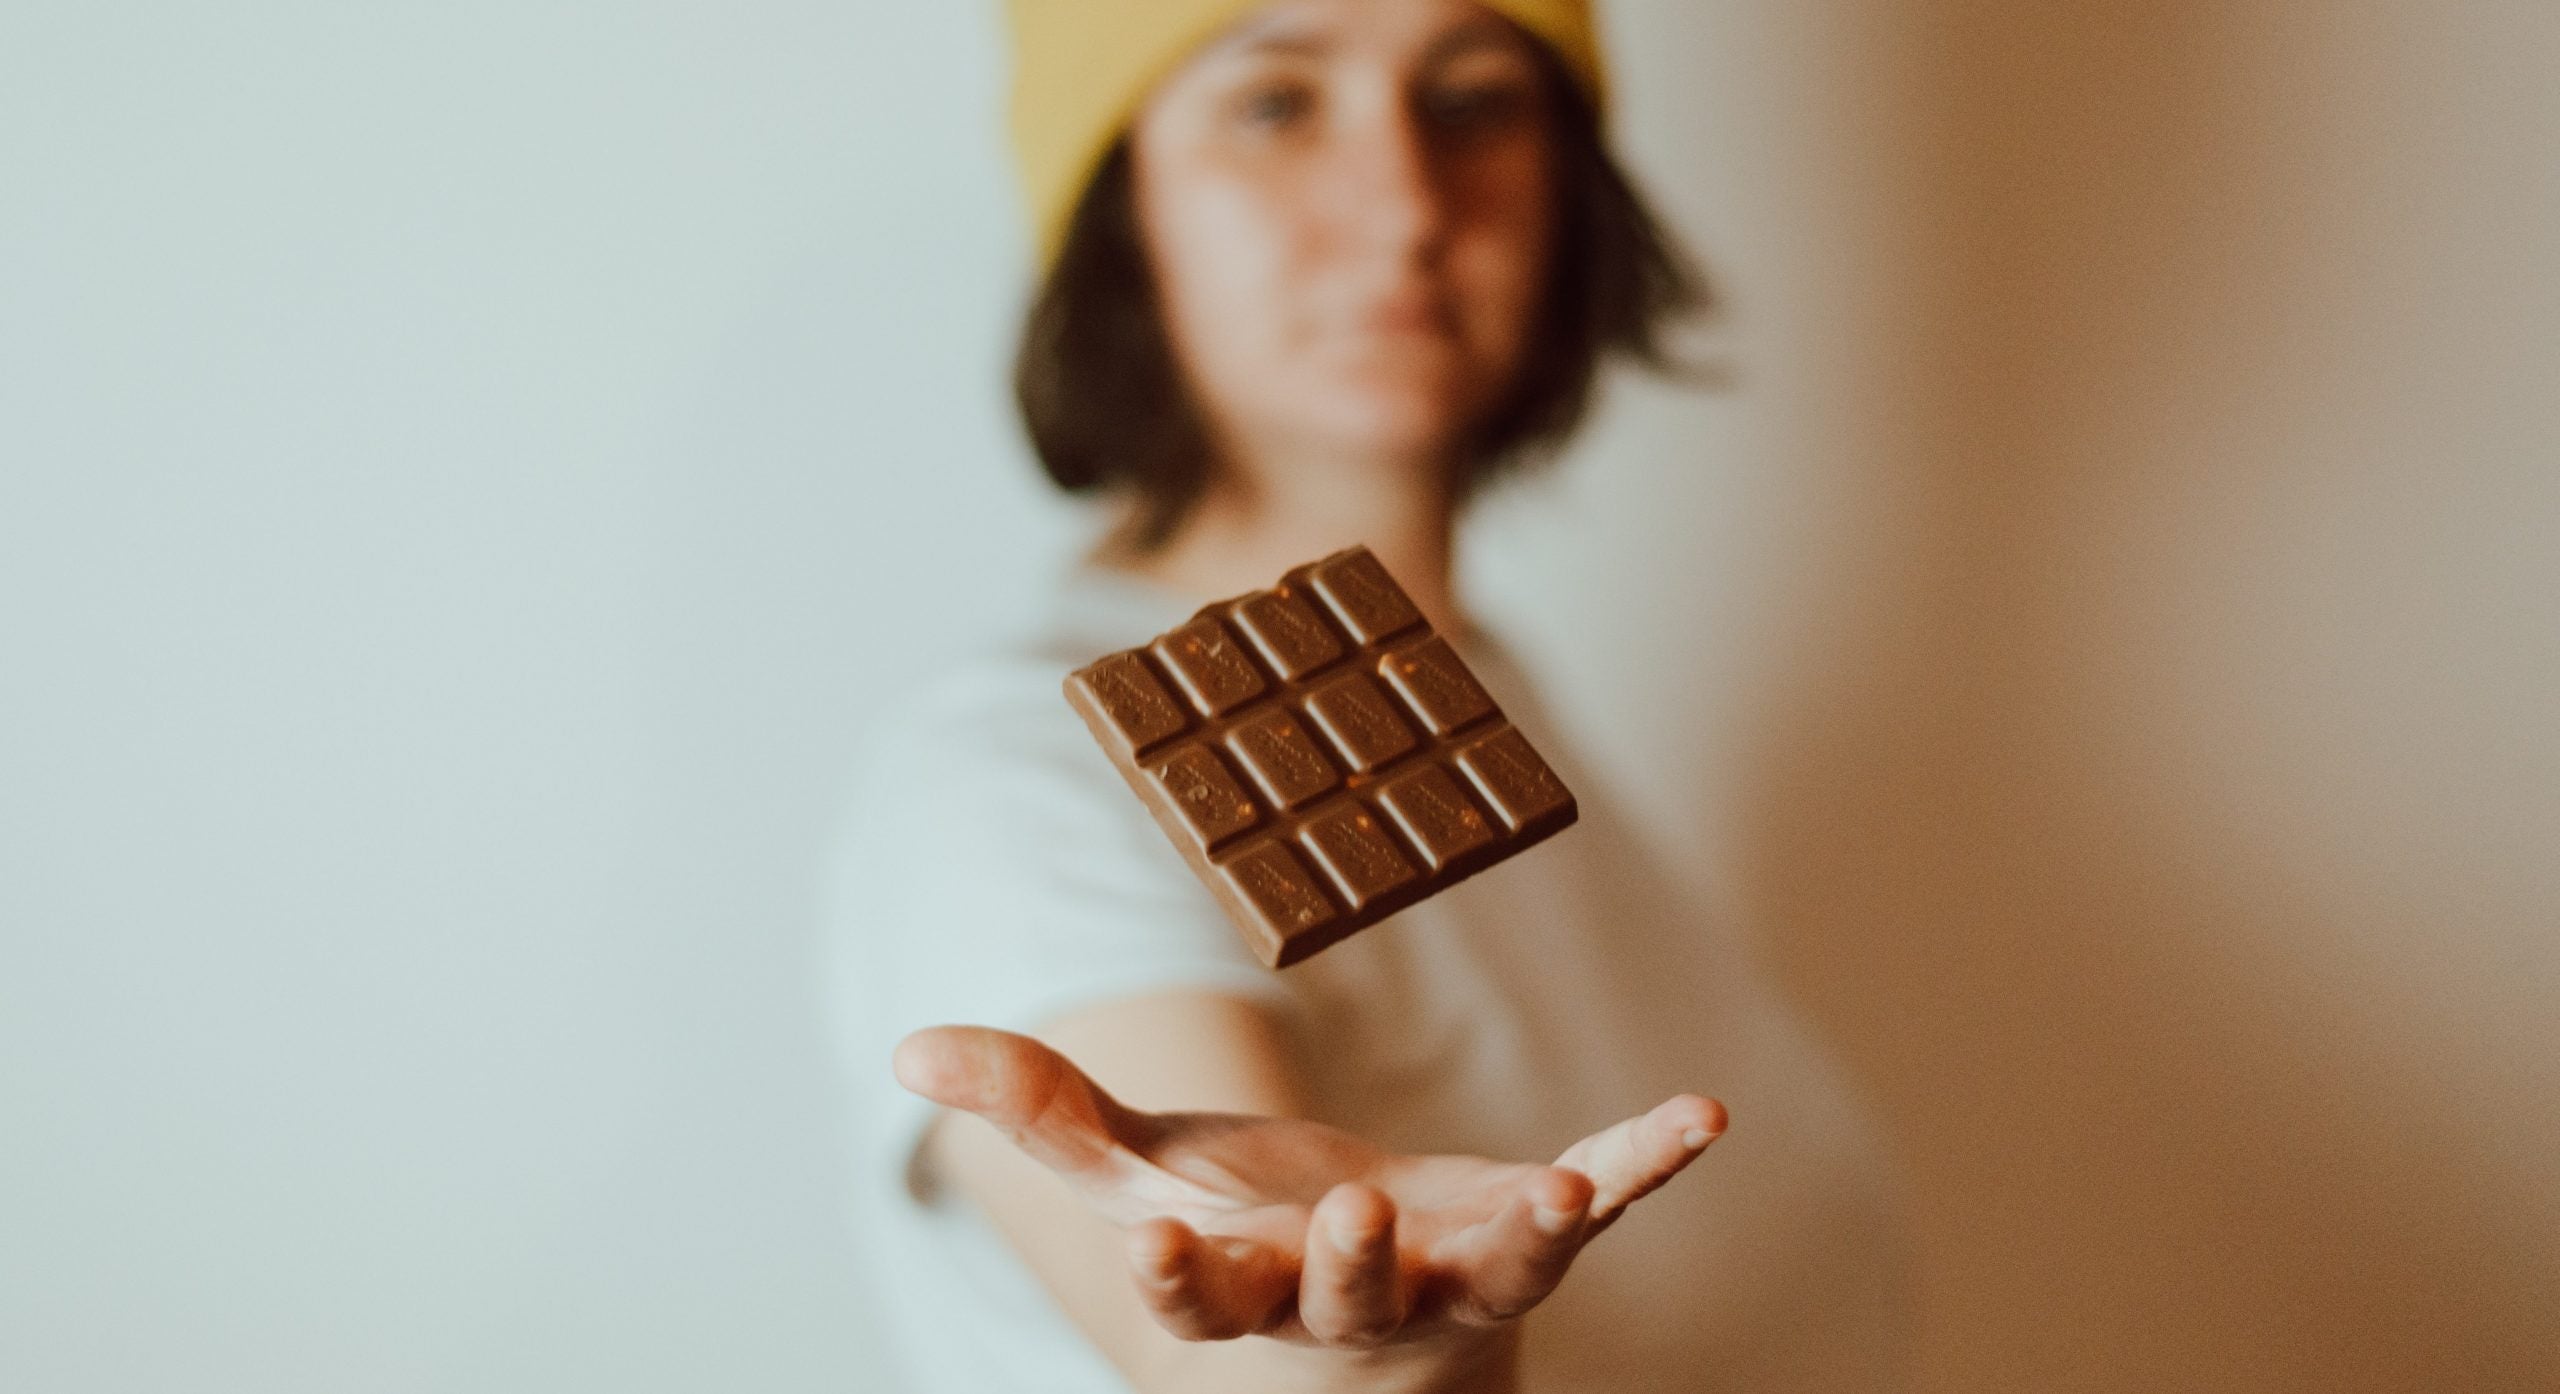 Chokolade og amning: Må jeg spise chokolade når jeg ammer?